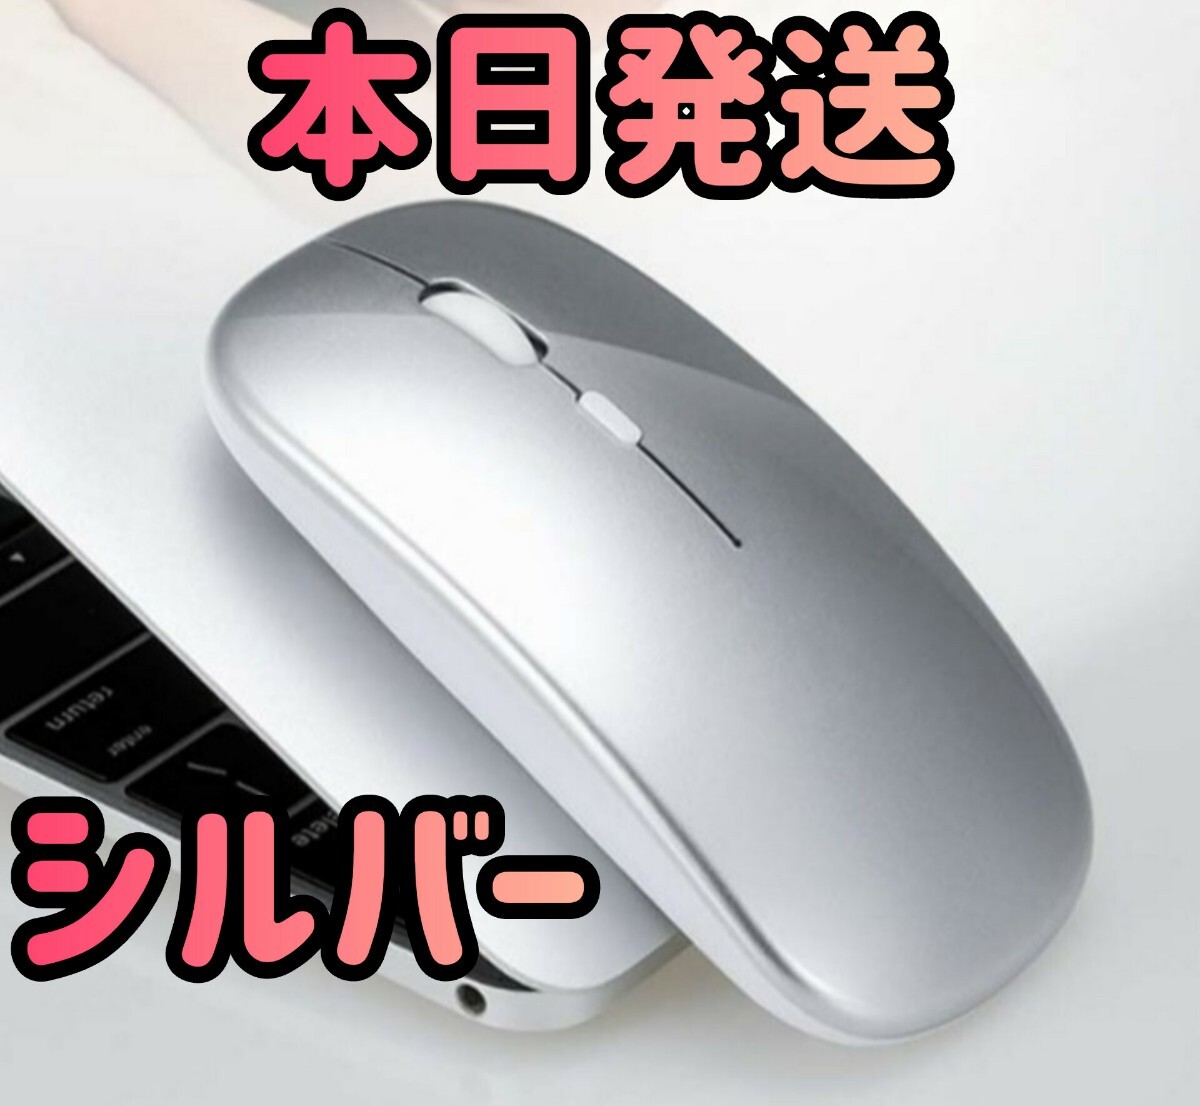  беспроводная мышь серебряный Bluetooth мышь мышь Bluetooth5.1 супер тонкий тихий звук 2.4G мышь персональный компьютер беспроводной мышь коврик для мыши ge-ming